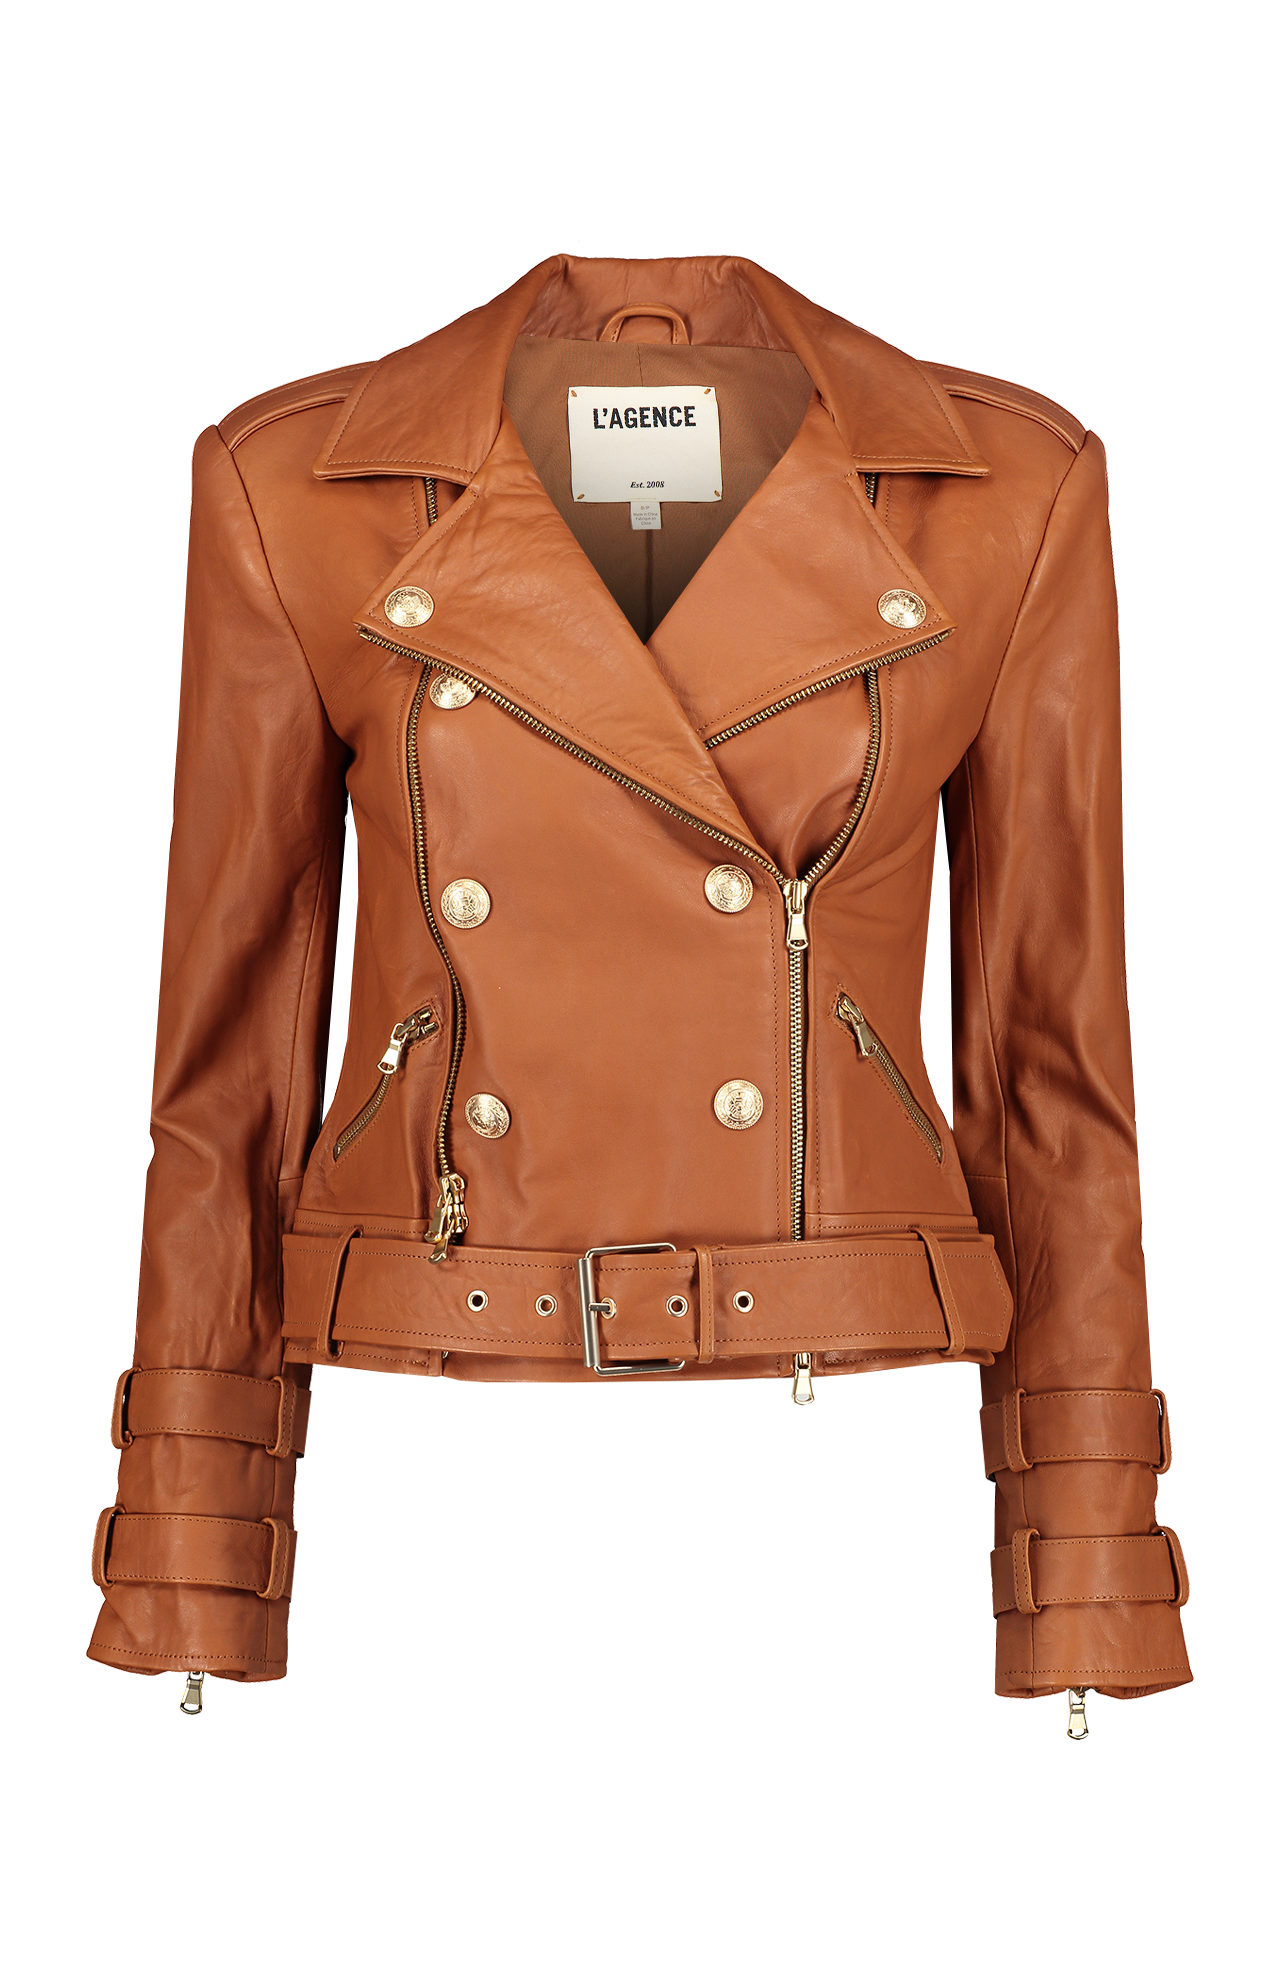 Vintage-Look Belted Leather Coat - Luxury Brown